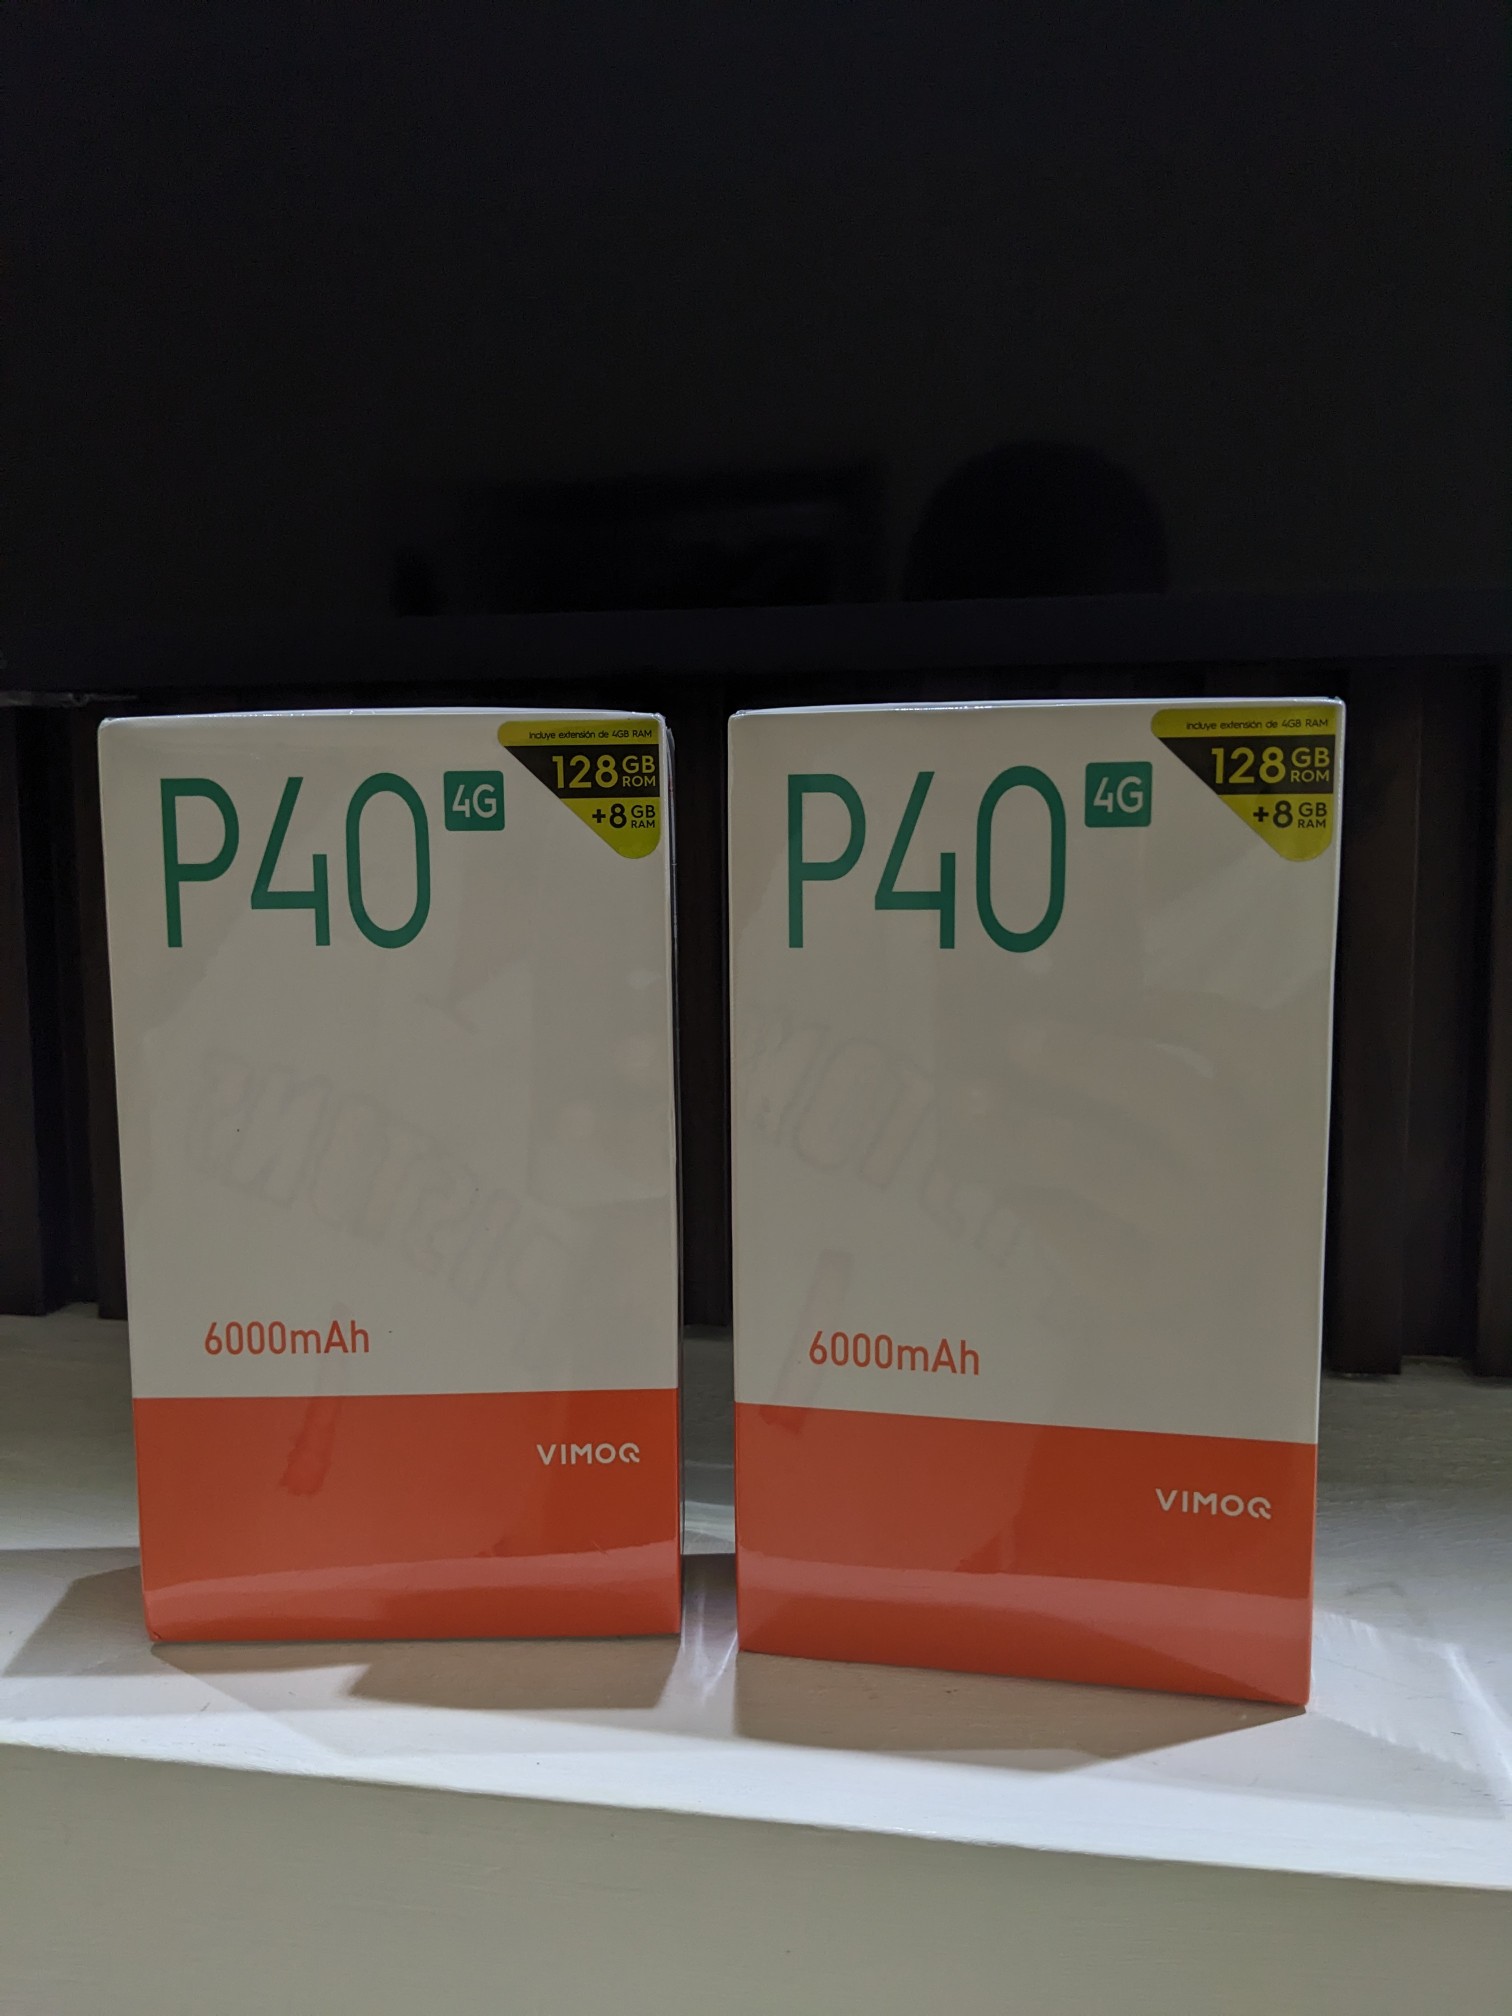 celulares y tabletas - P40 VIMOQ  8